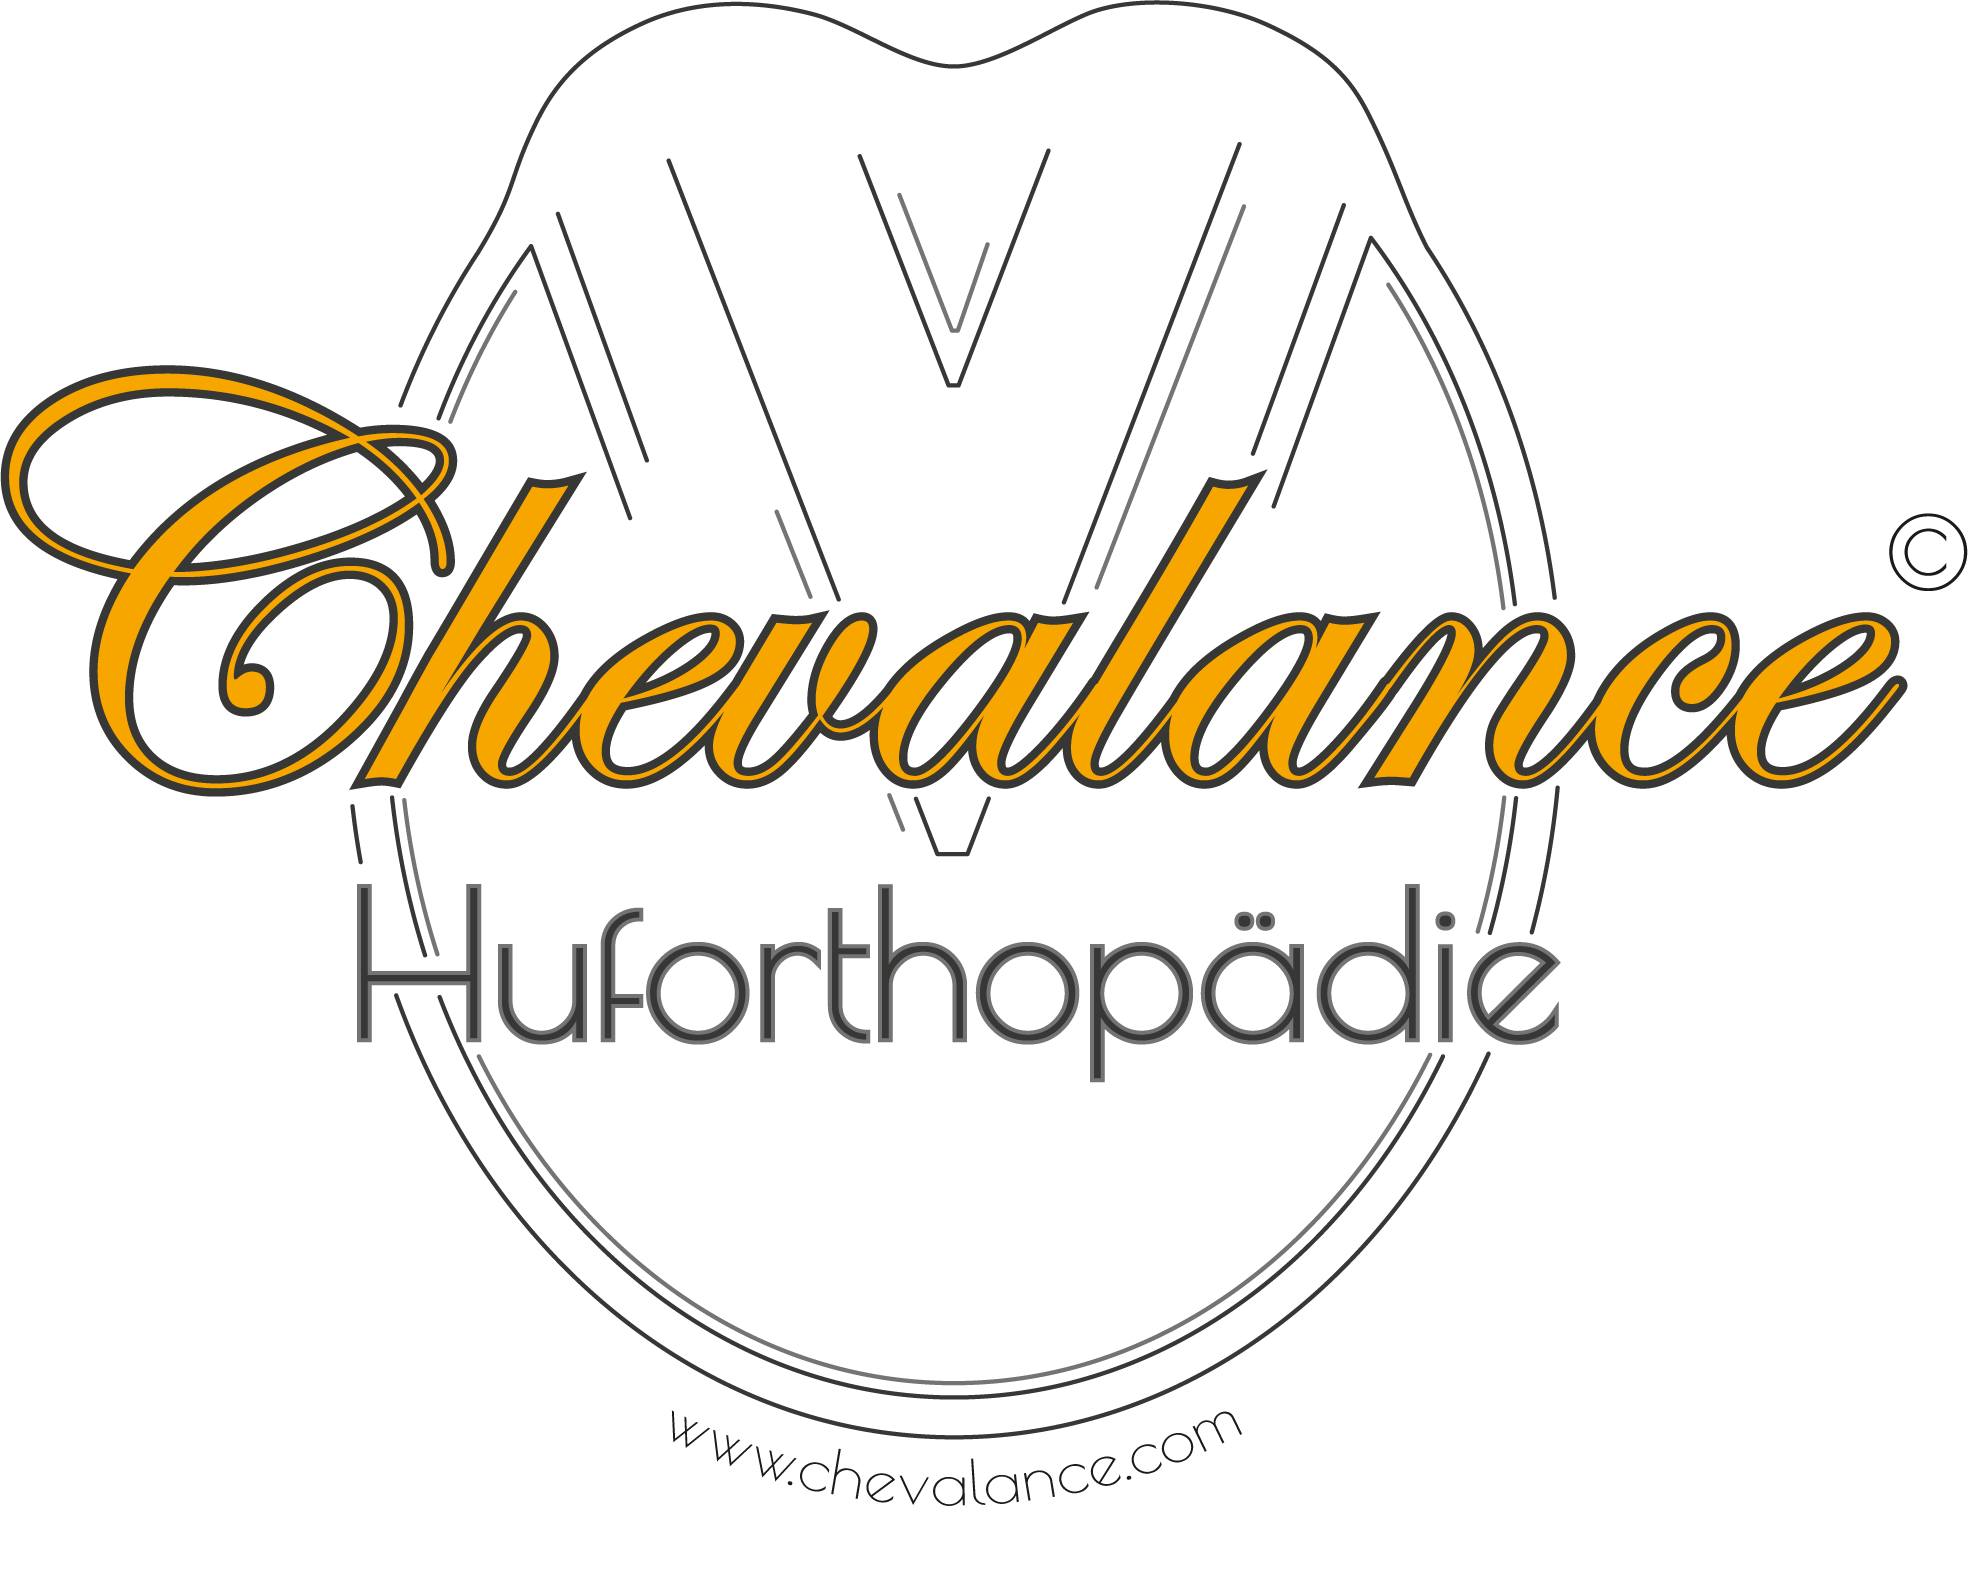 Logo Chevalance